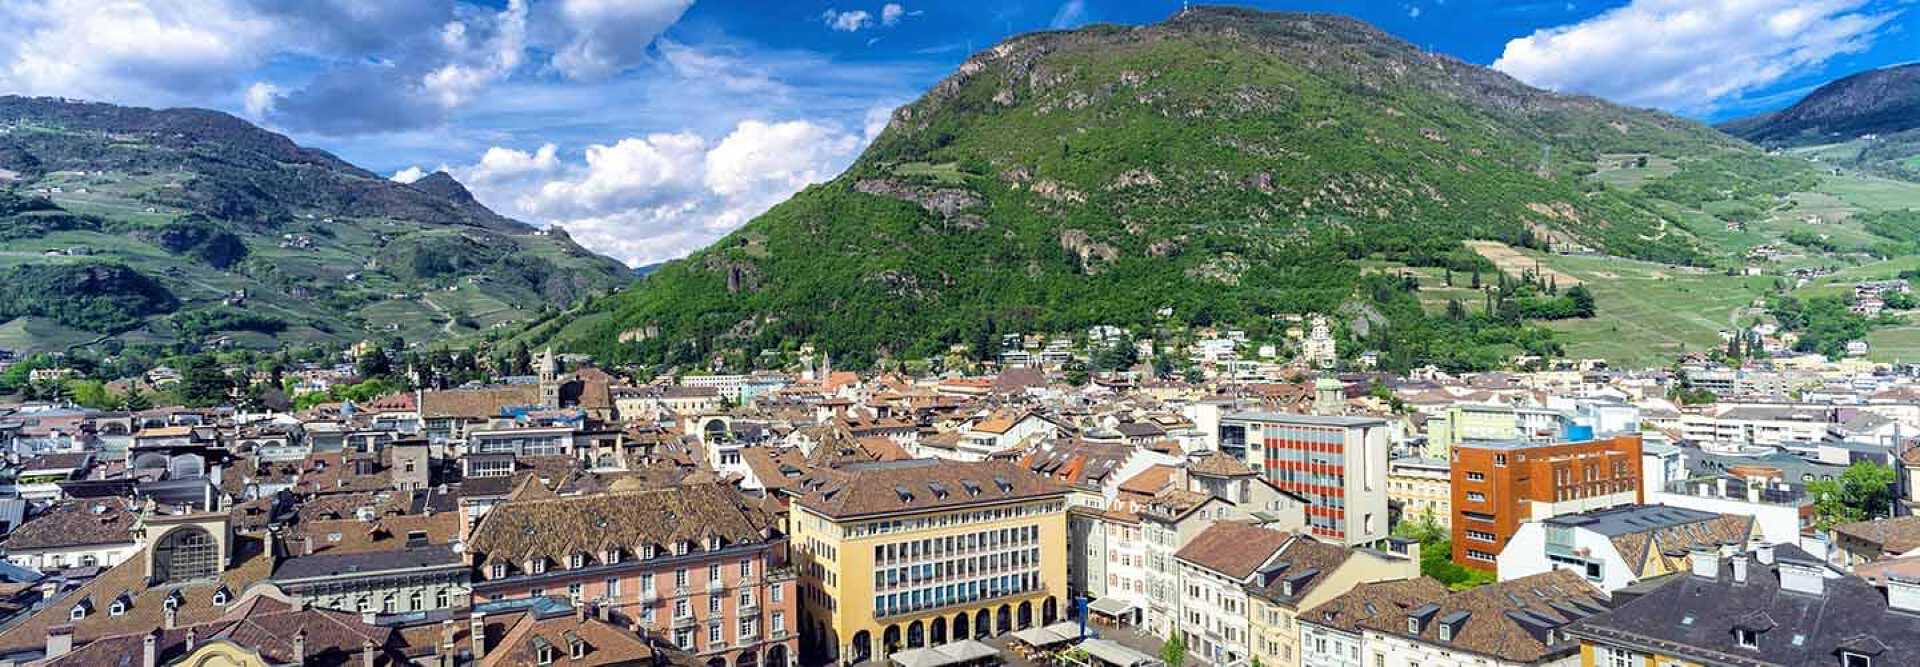 Vue aréirenne des toits de la ville de Bolzano en Italie avec des montagnes en arrière plans